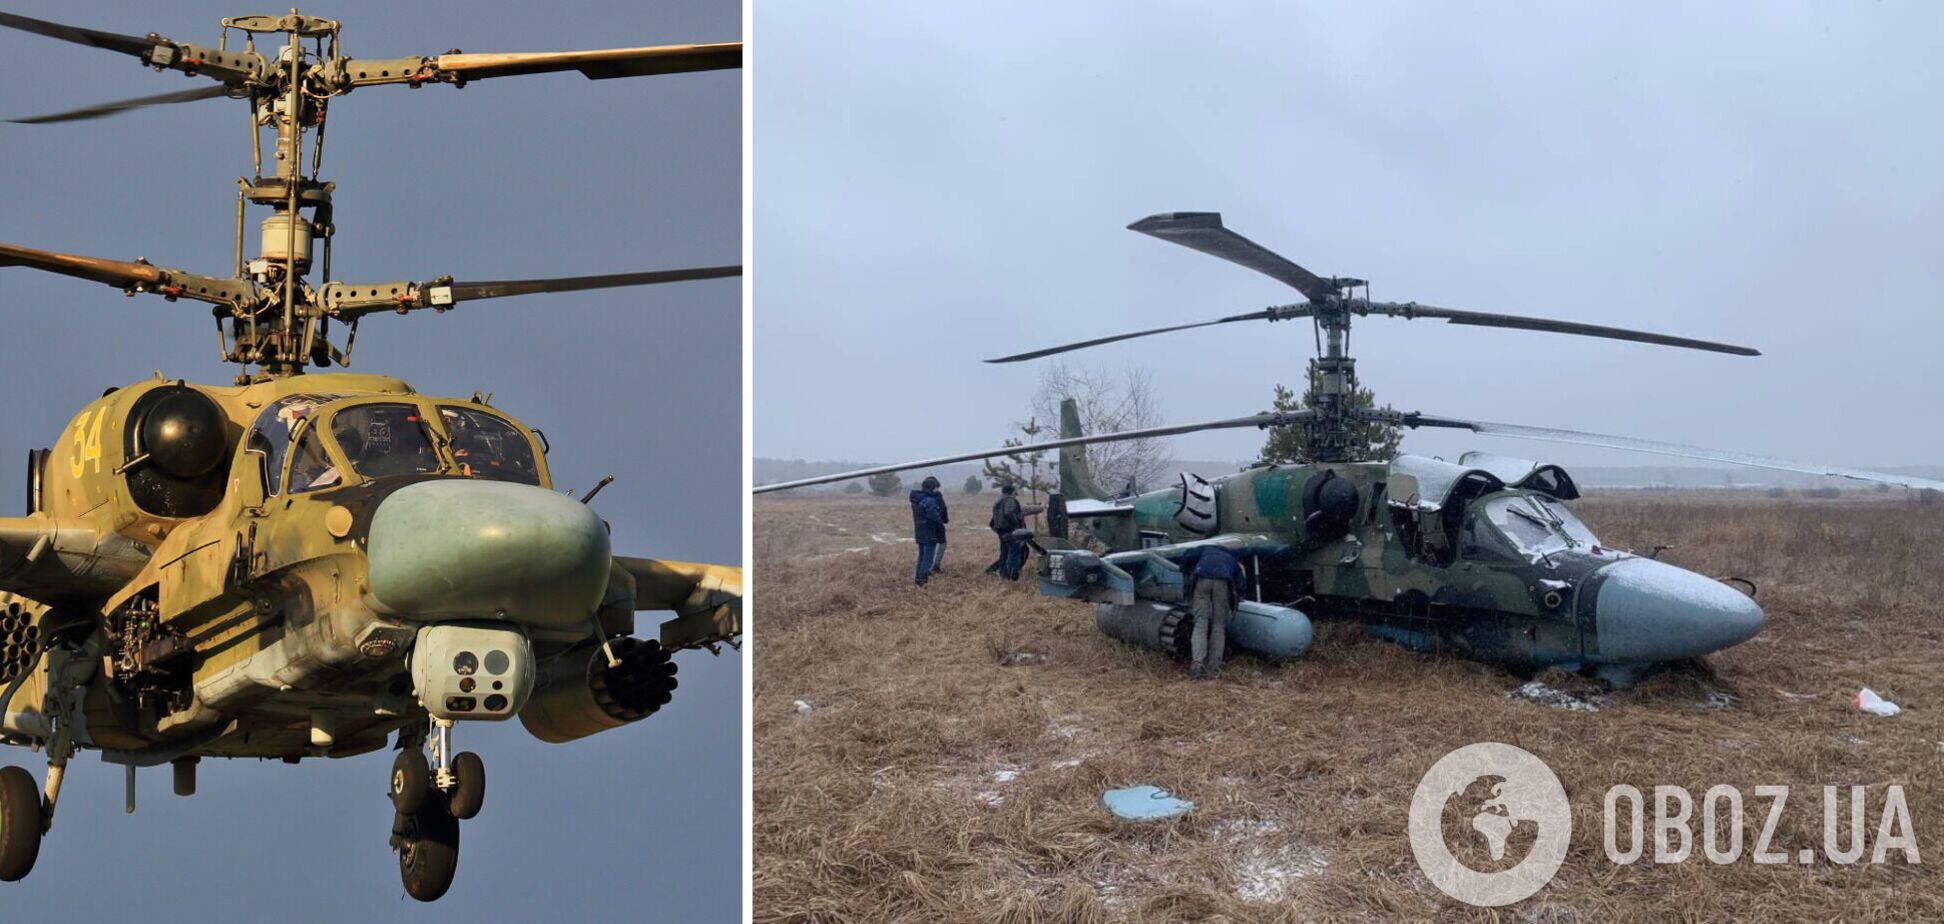 'Очень хорошие новости!' Появились официальные подробности уничтожения двух российских вертолетов Ка-52